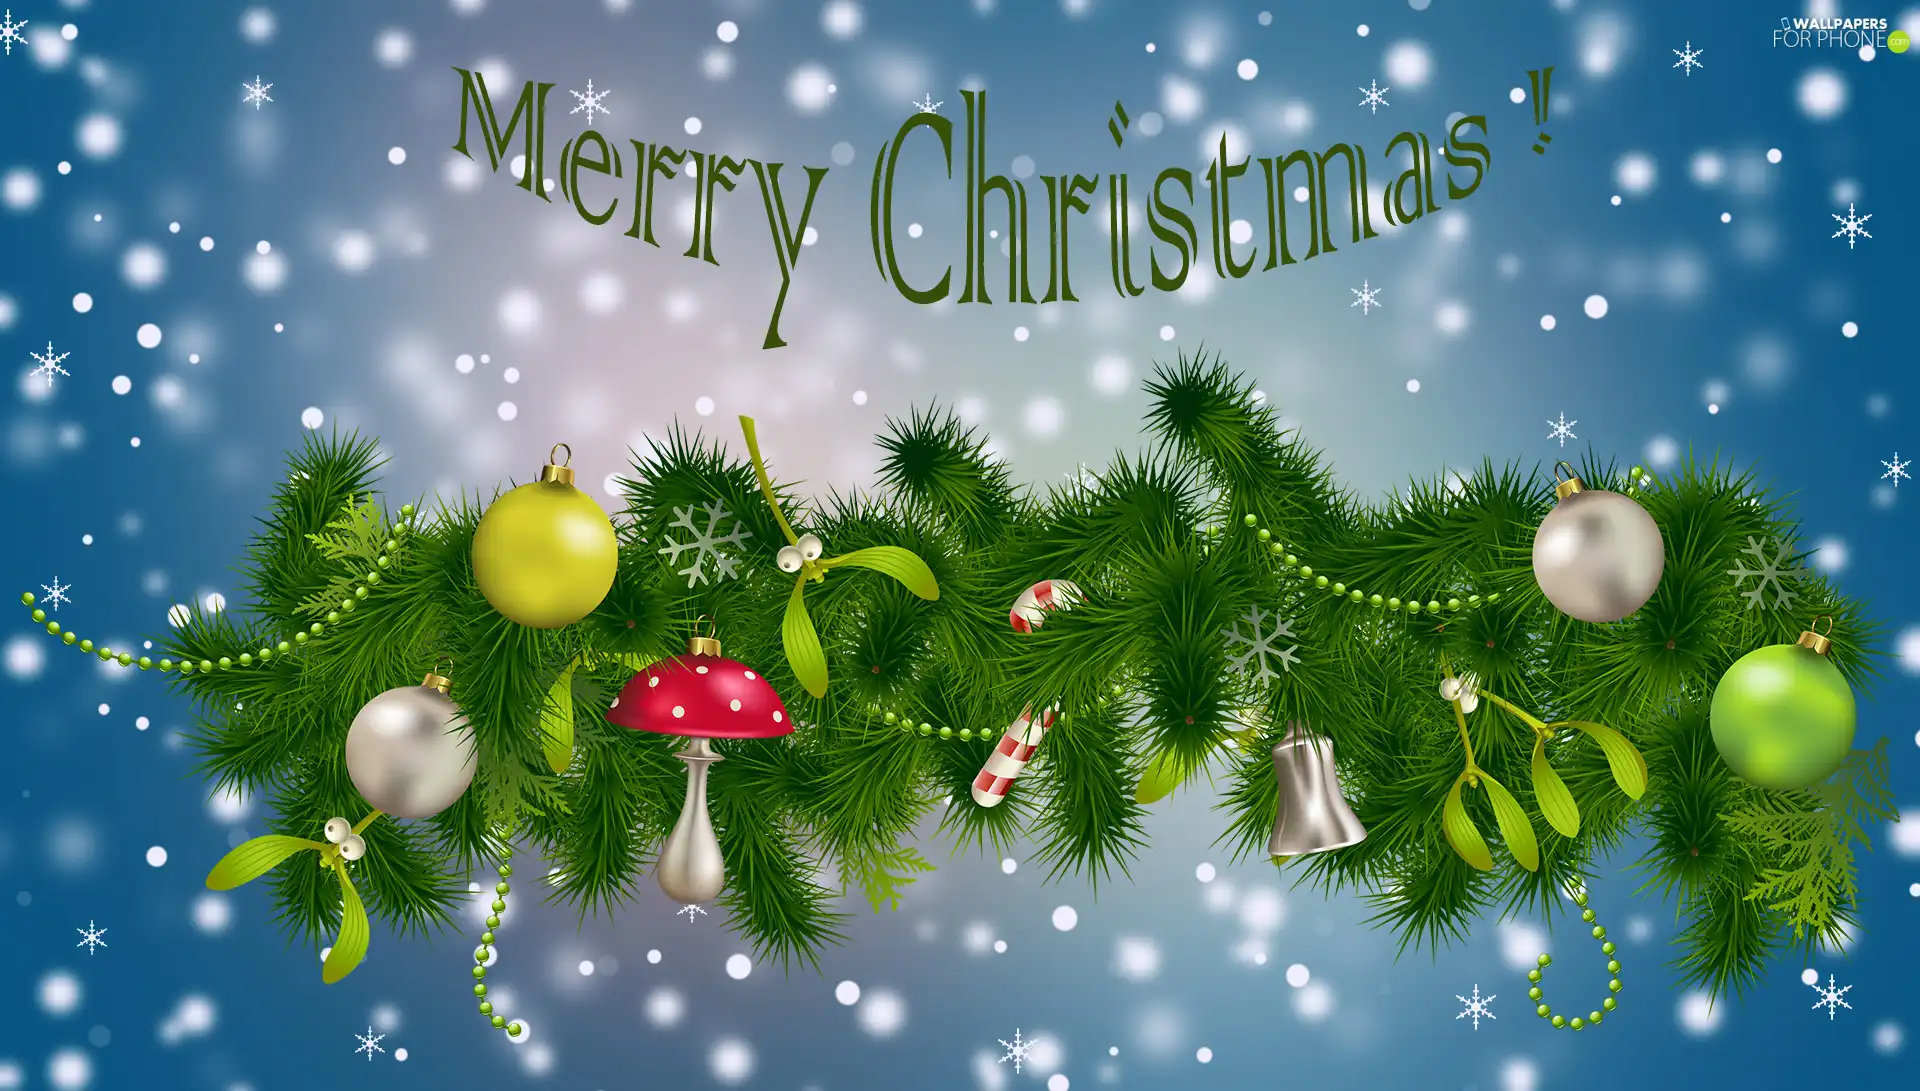 text, ##, decoration, Christmas, Christmas